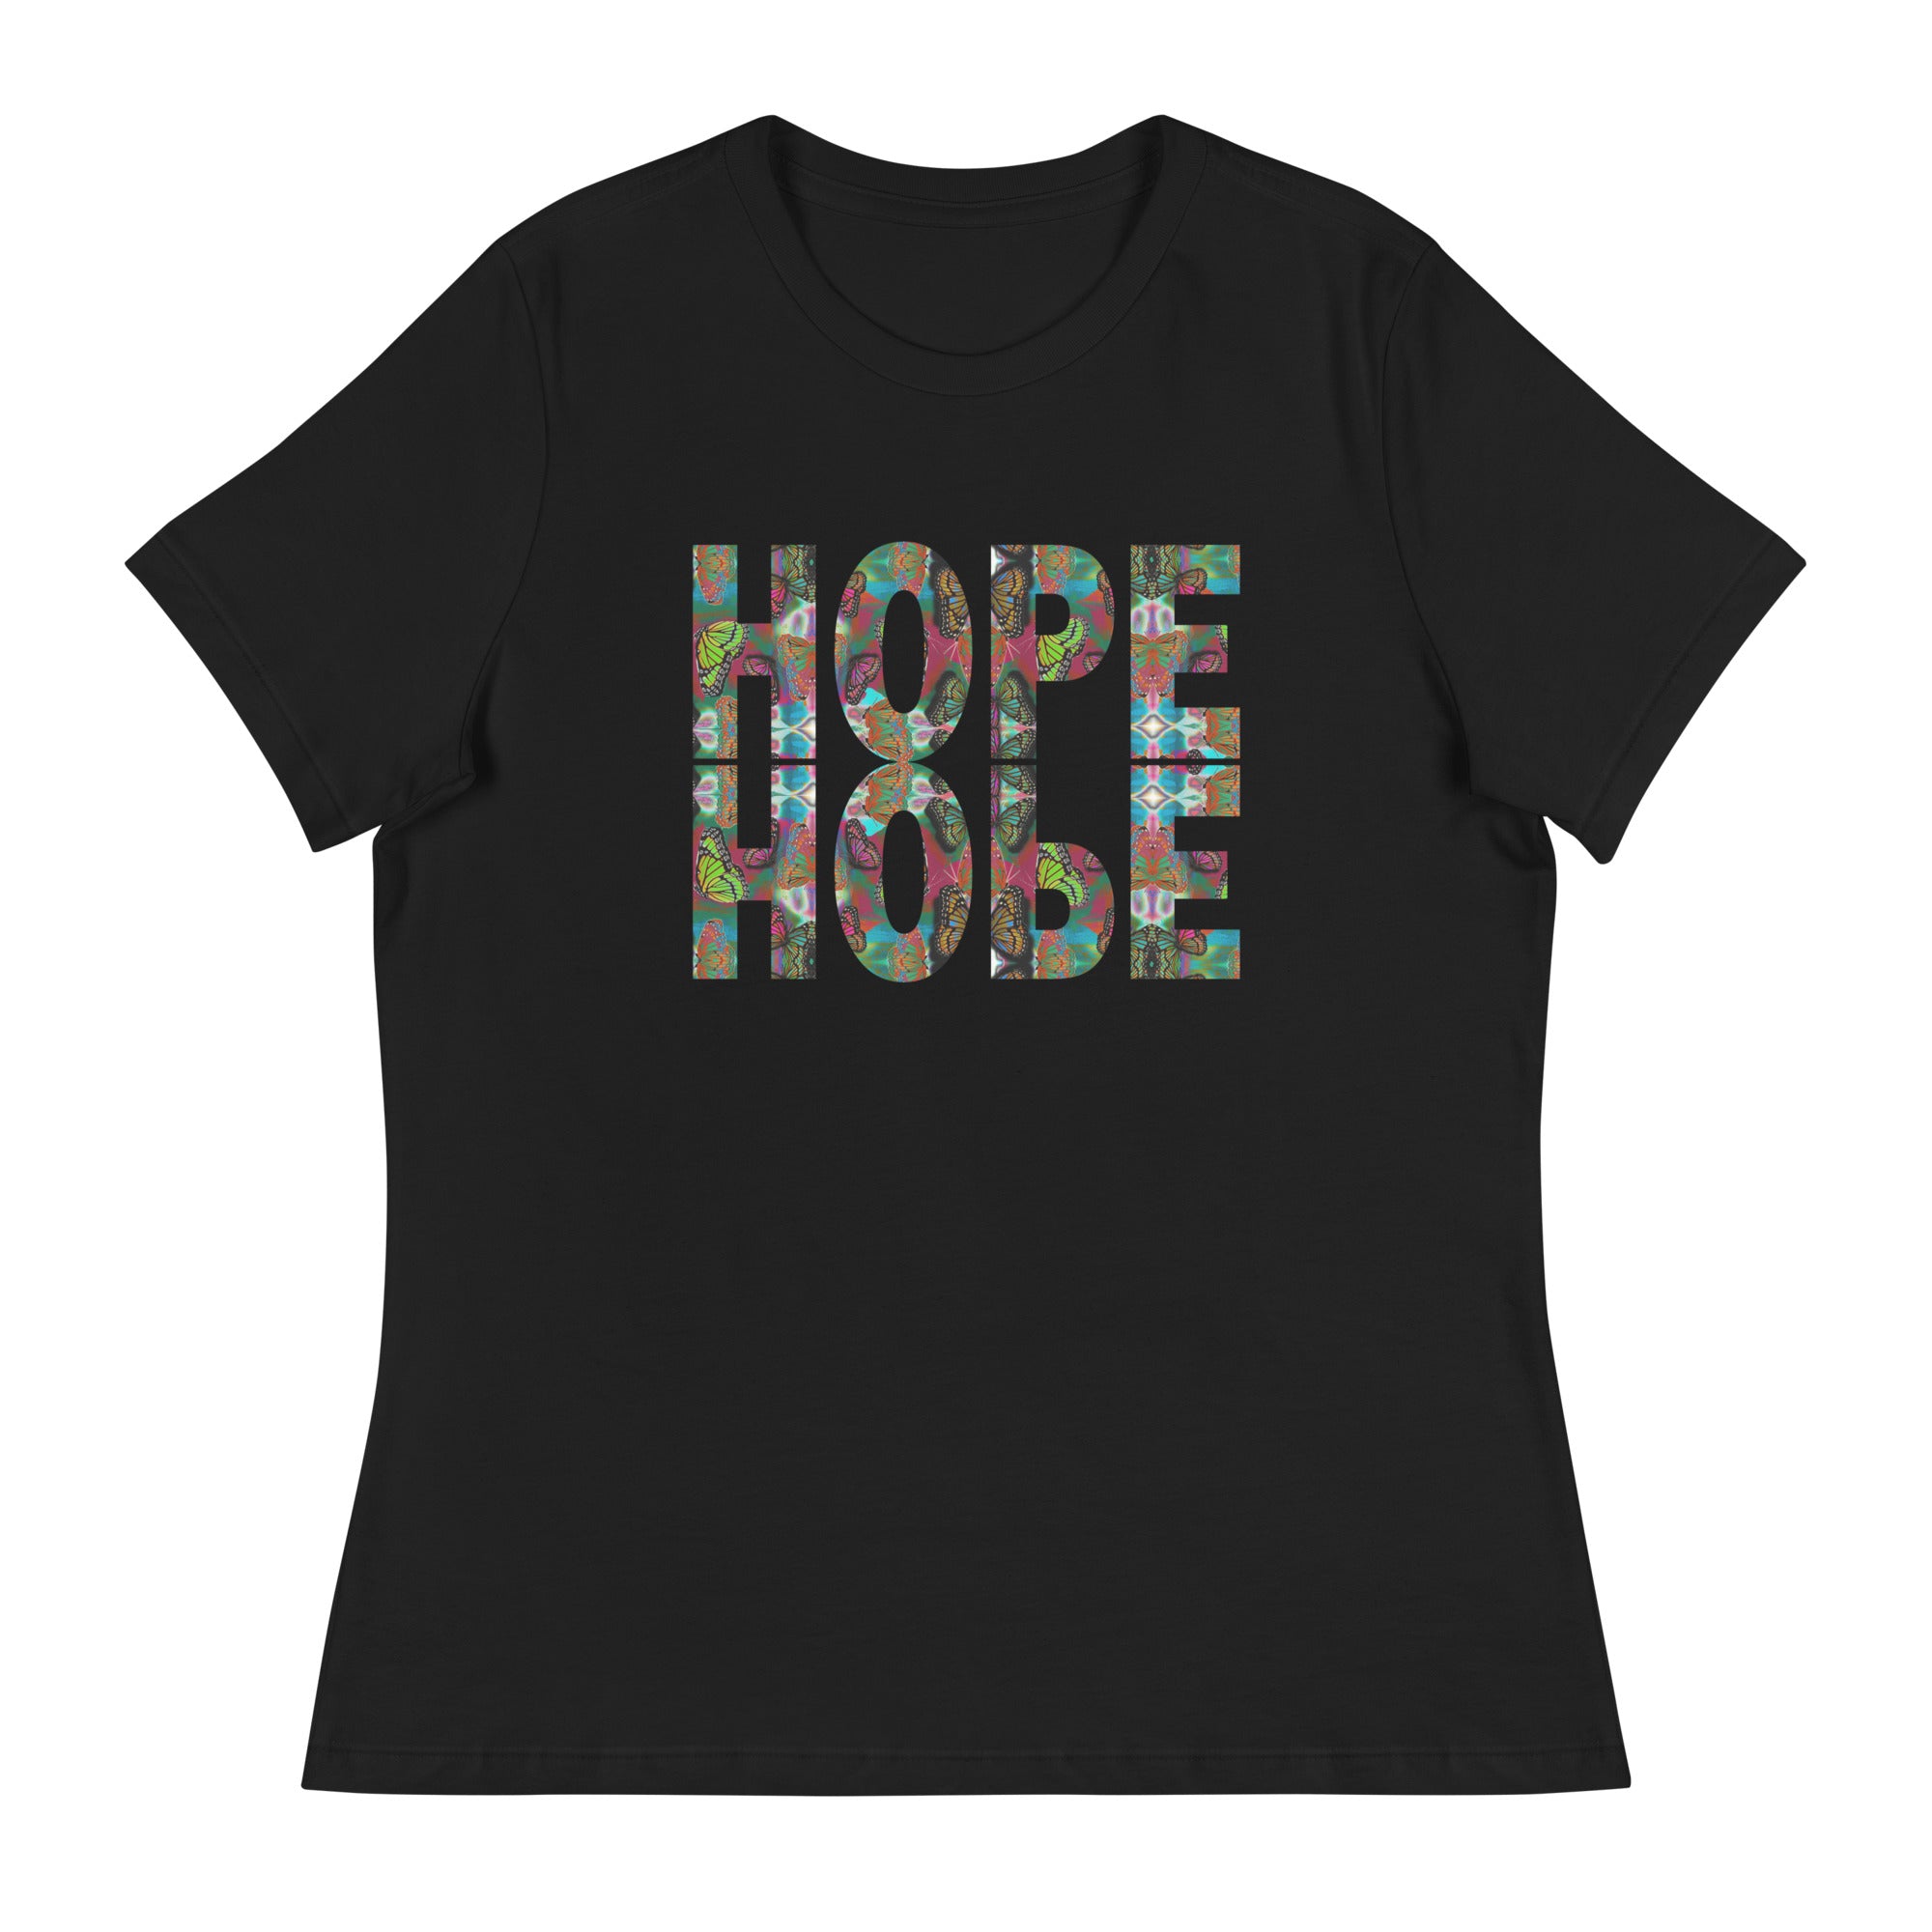 HOPE ~ Women's Graphic T-Shirt, Butterfly Word Art Short Sleeve Top